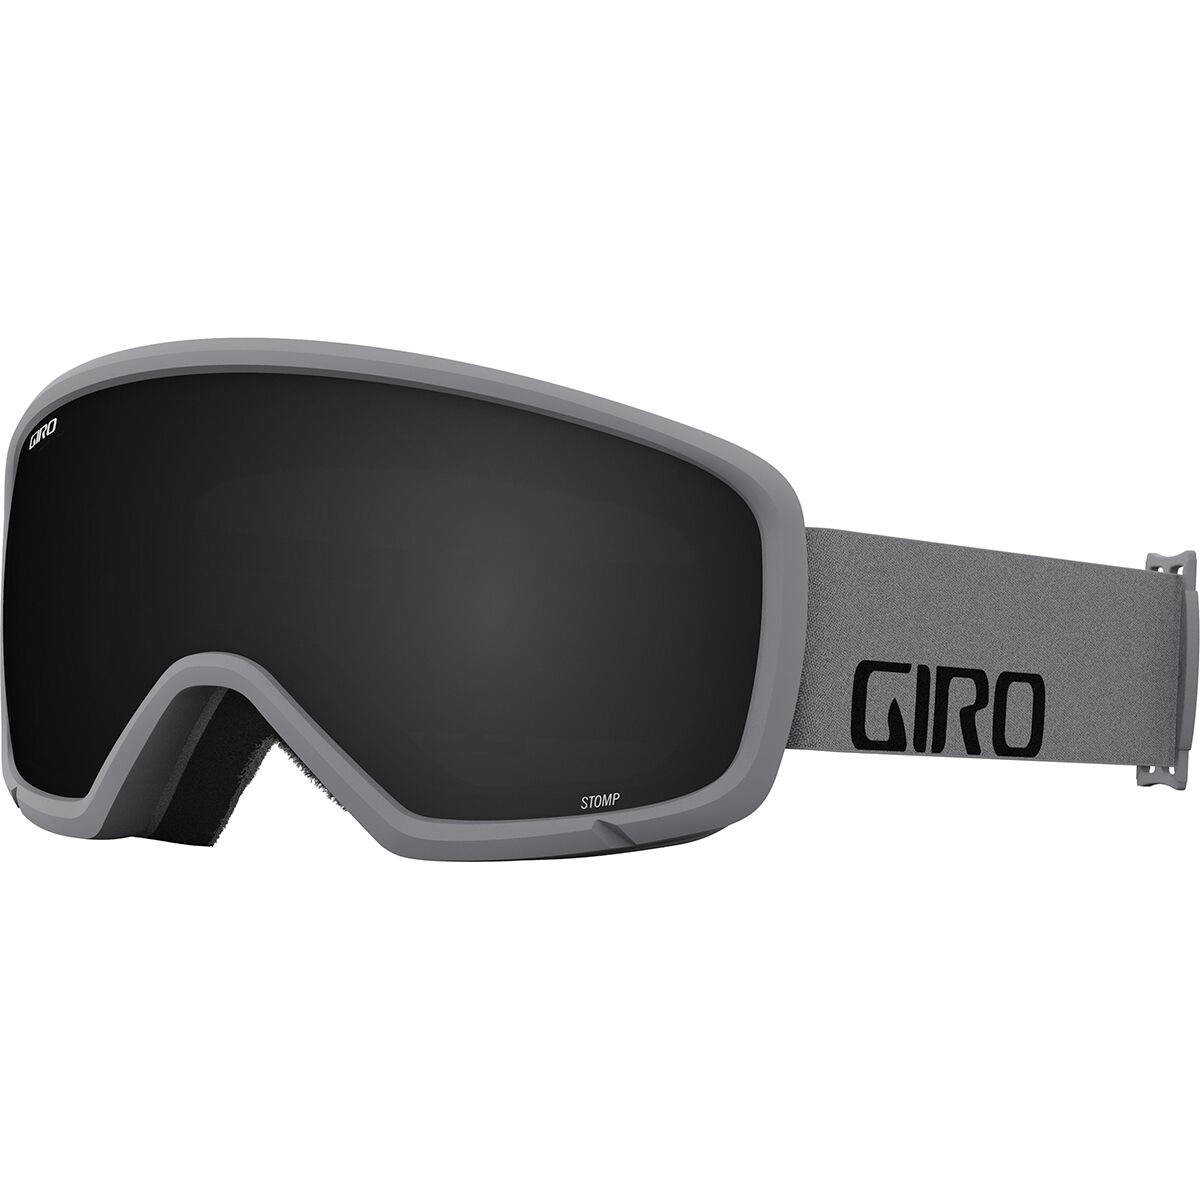 Photos - Ski Goggles Giro Stomp Goggles - Kids' 